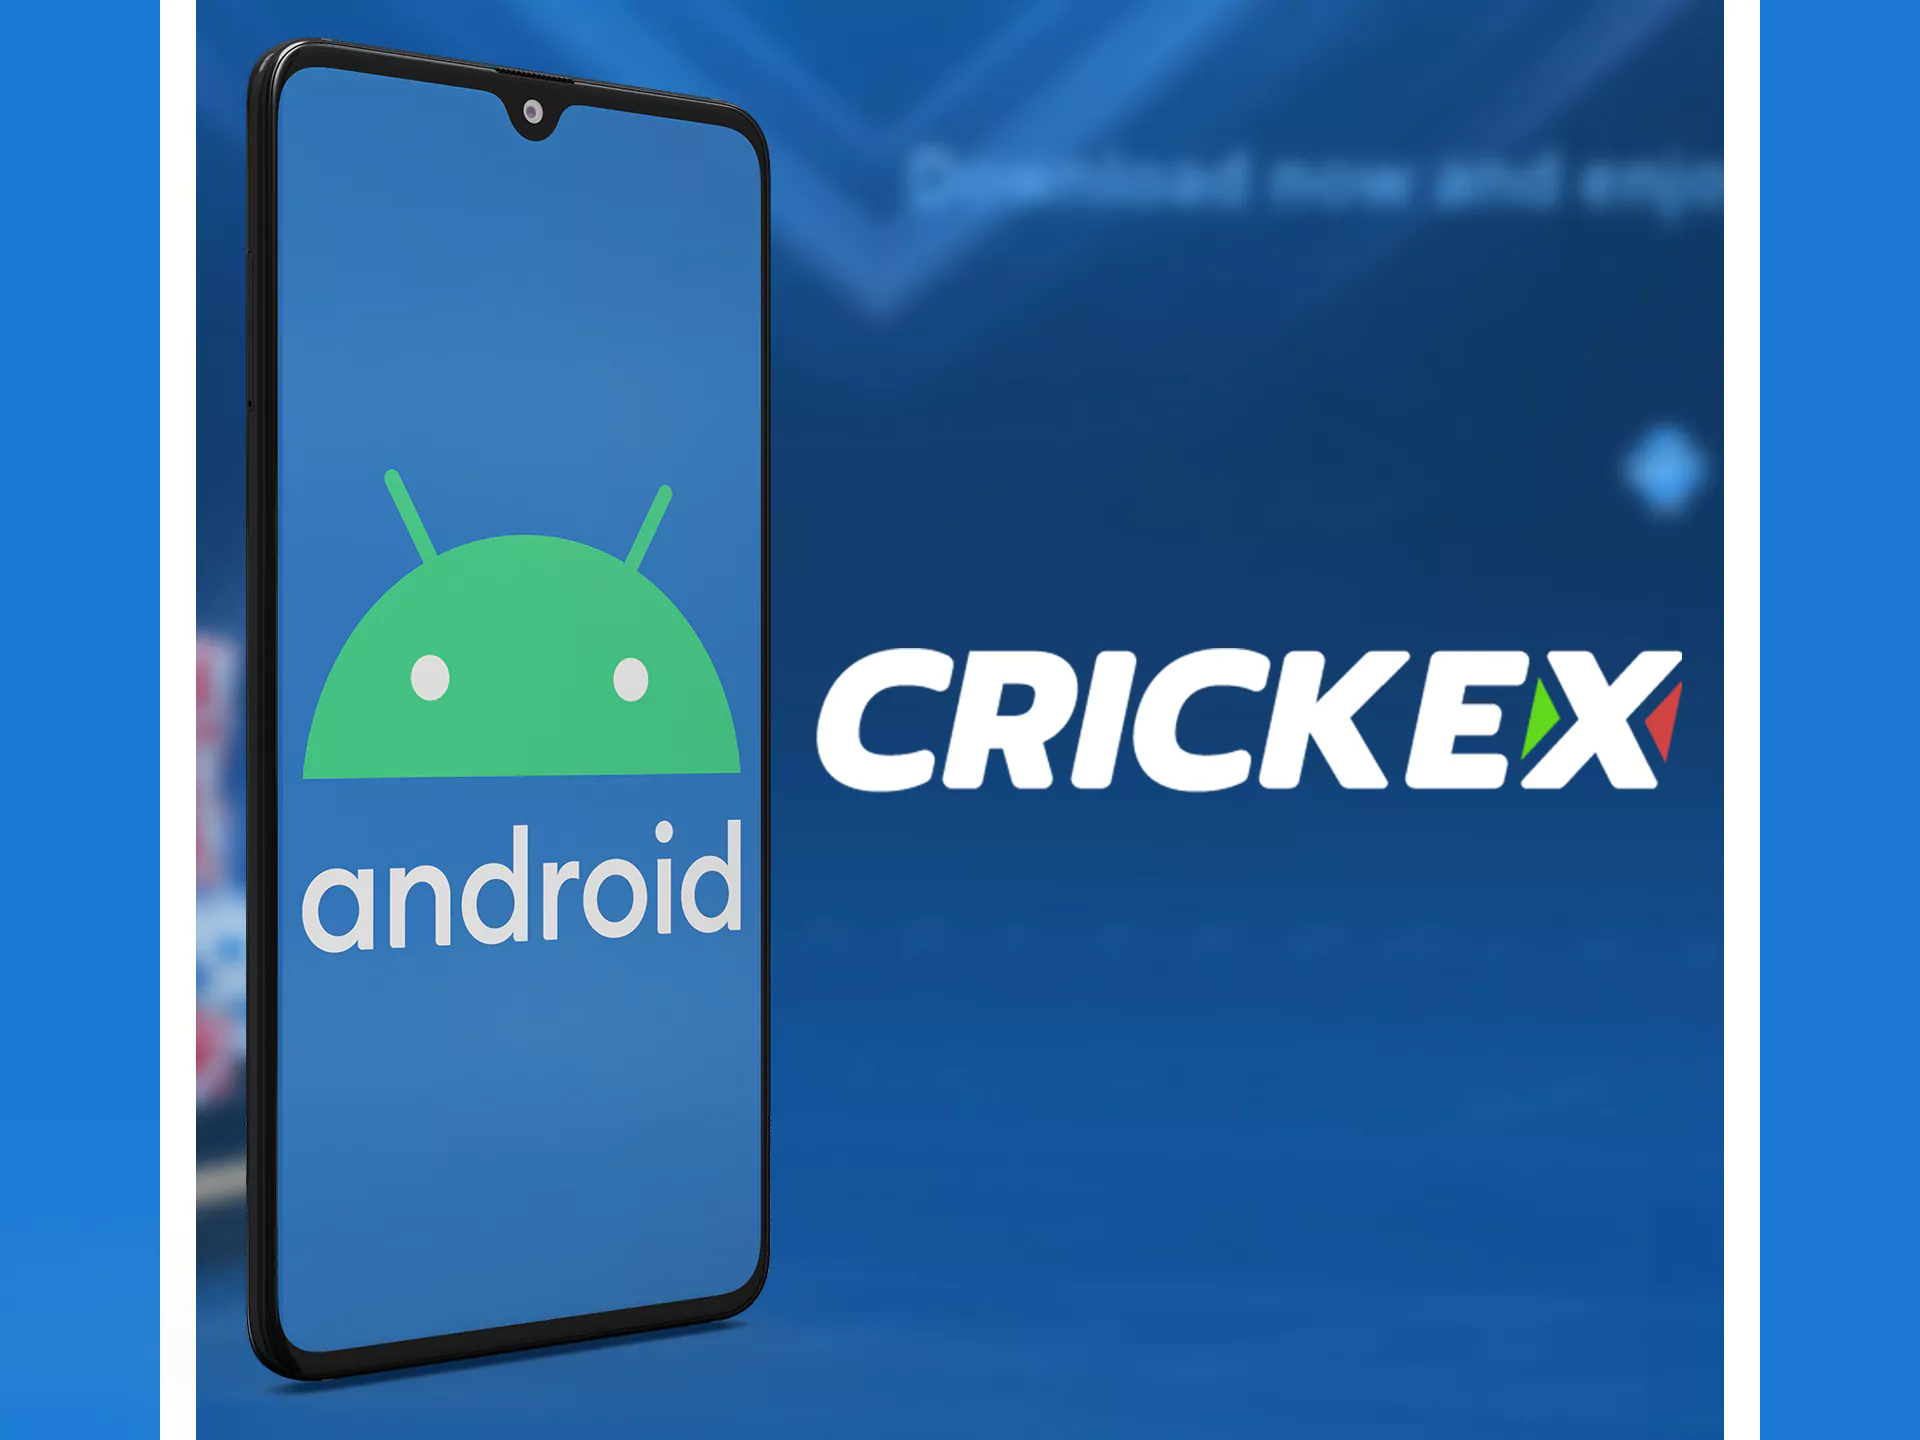 Crickex ऐप Android डिवाइस पर स्थिर है।